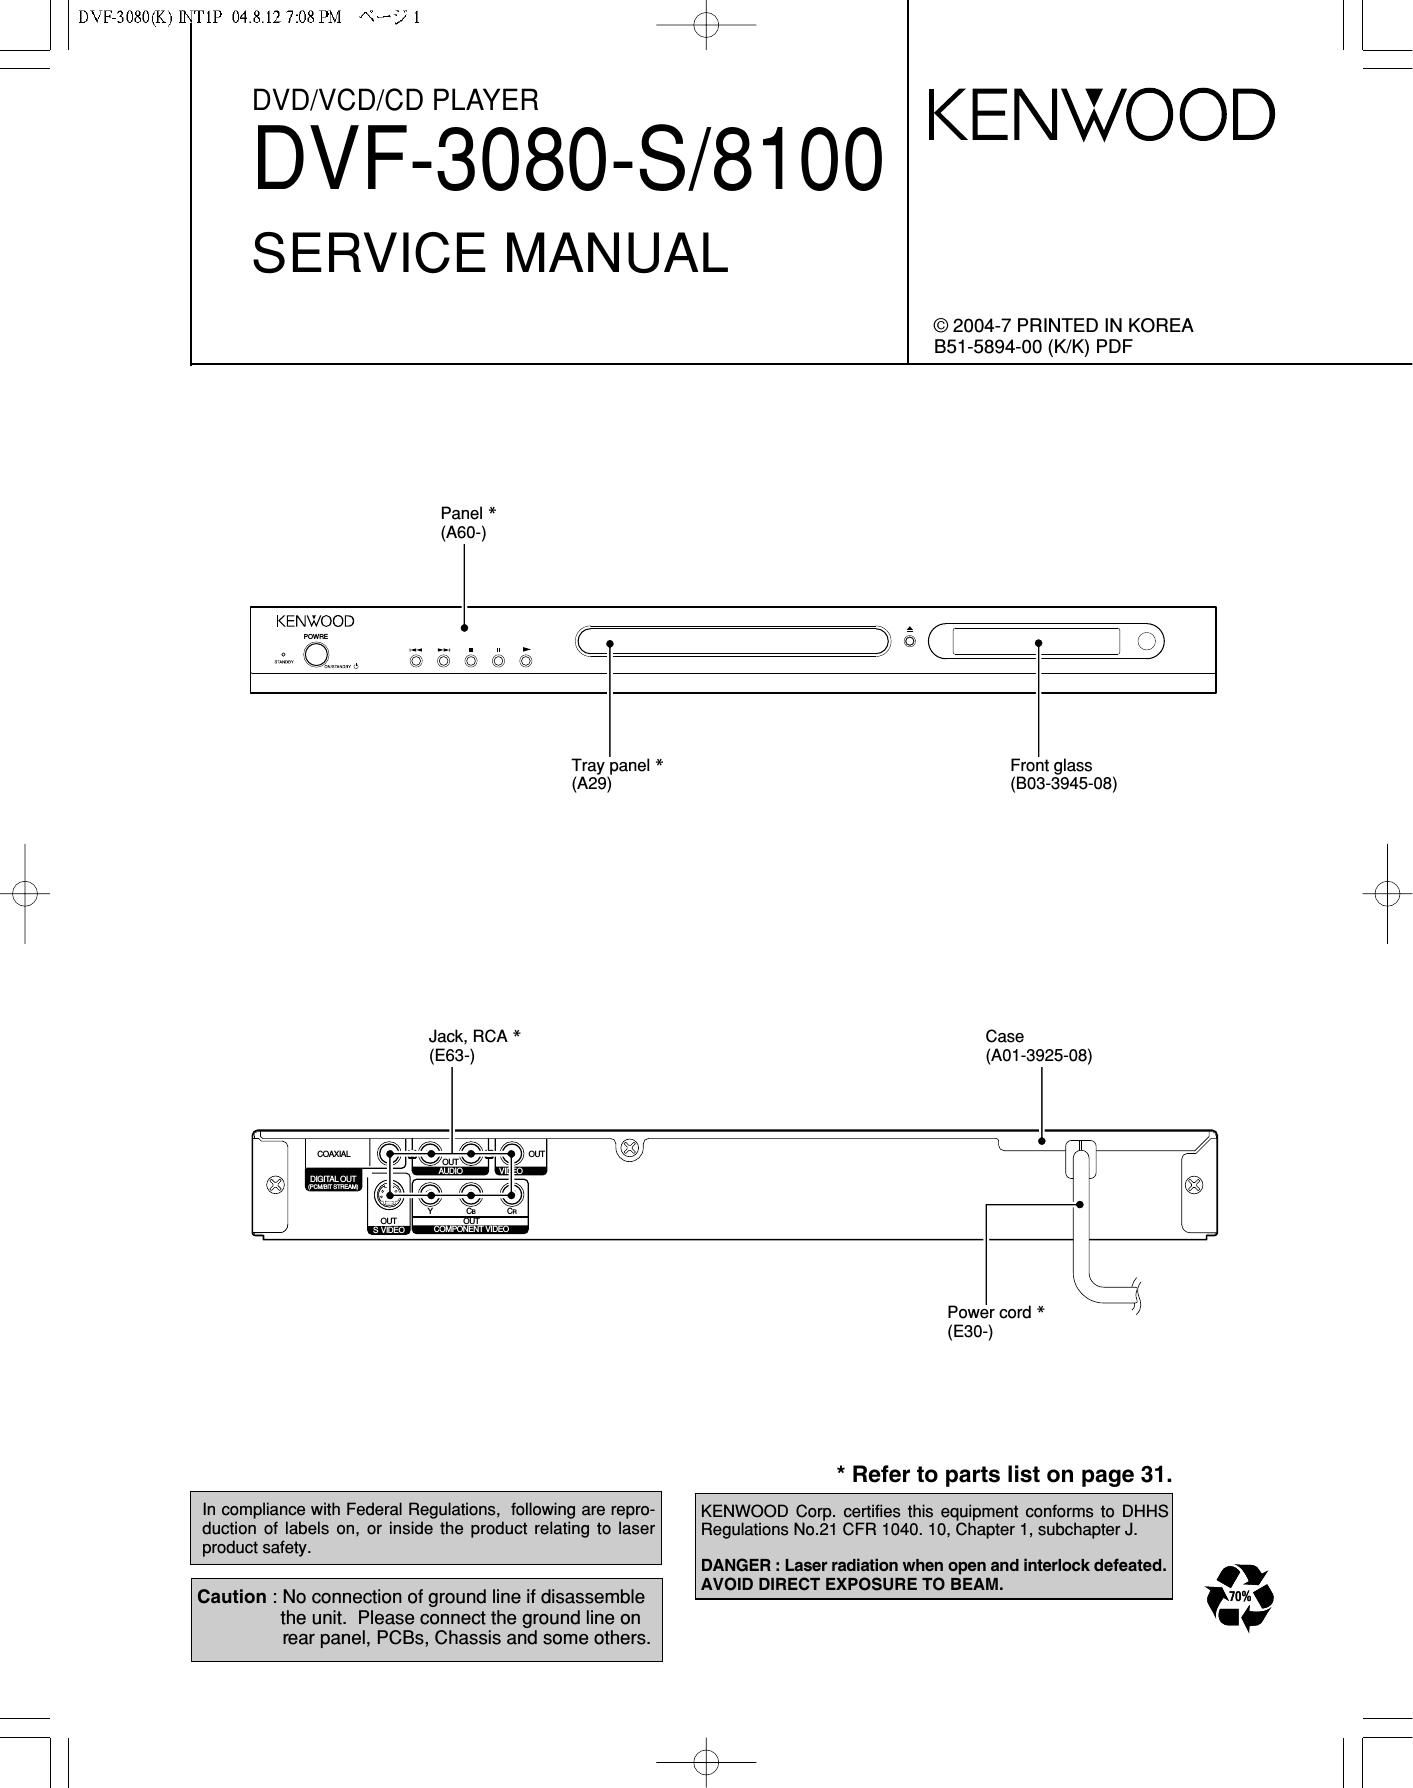 Kenwood DVF 8100 Service Manual